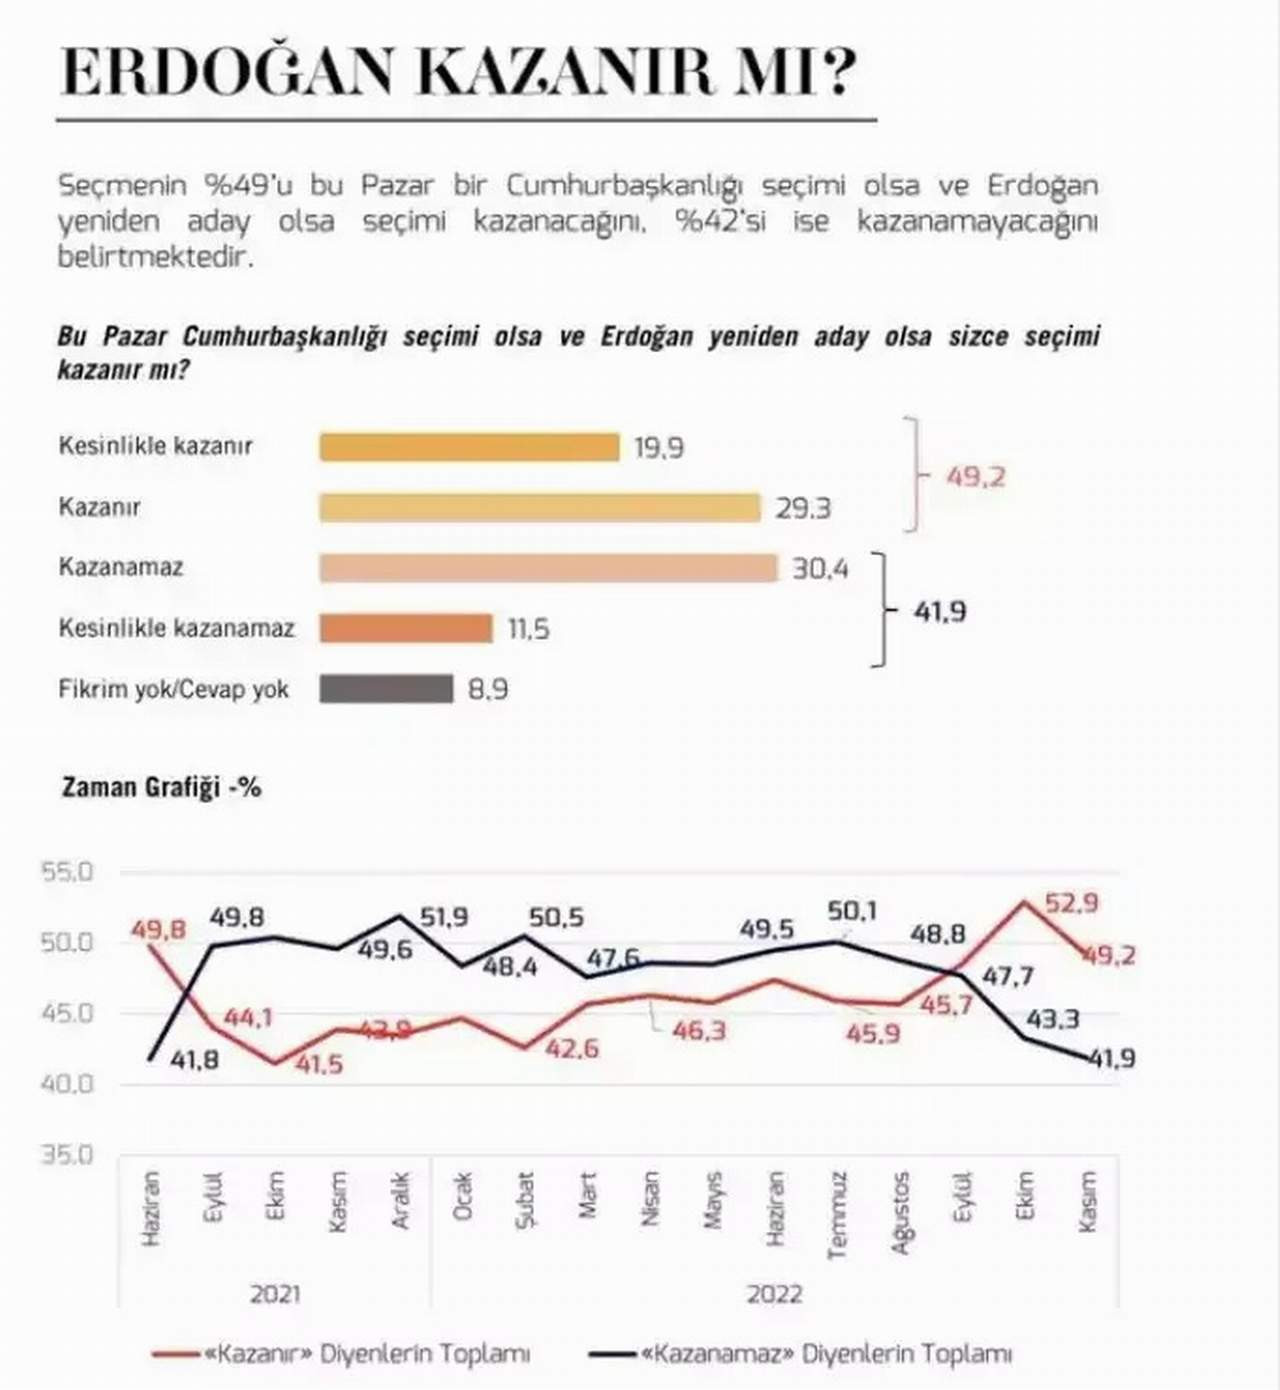 metropoll Bu pazar cumhurbaşkanlığı seçim olsa ve Erdoğan yeniden aday olsa sizce seçimi kazanır mı anketi